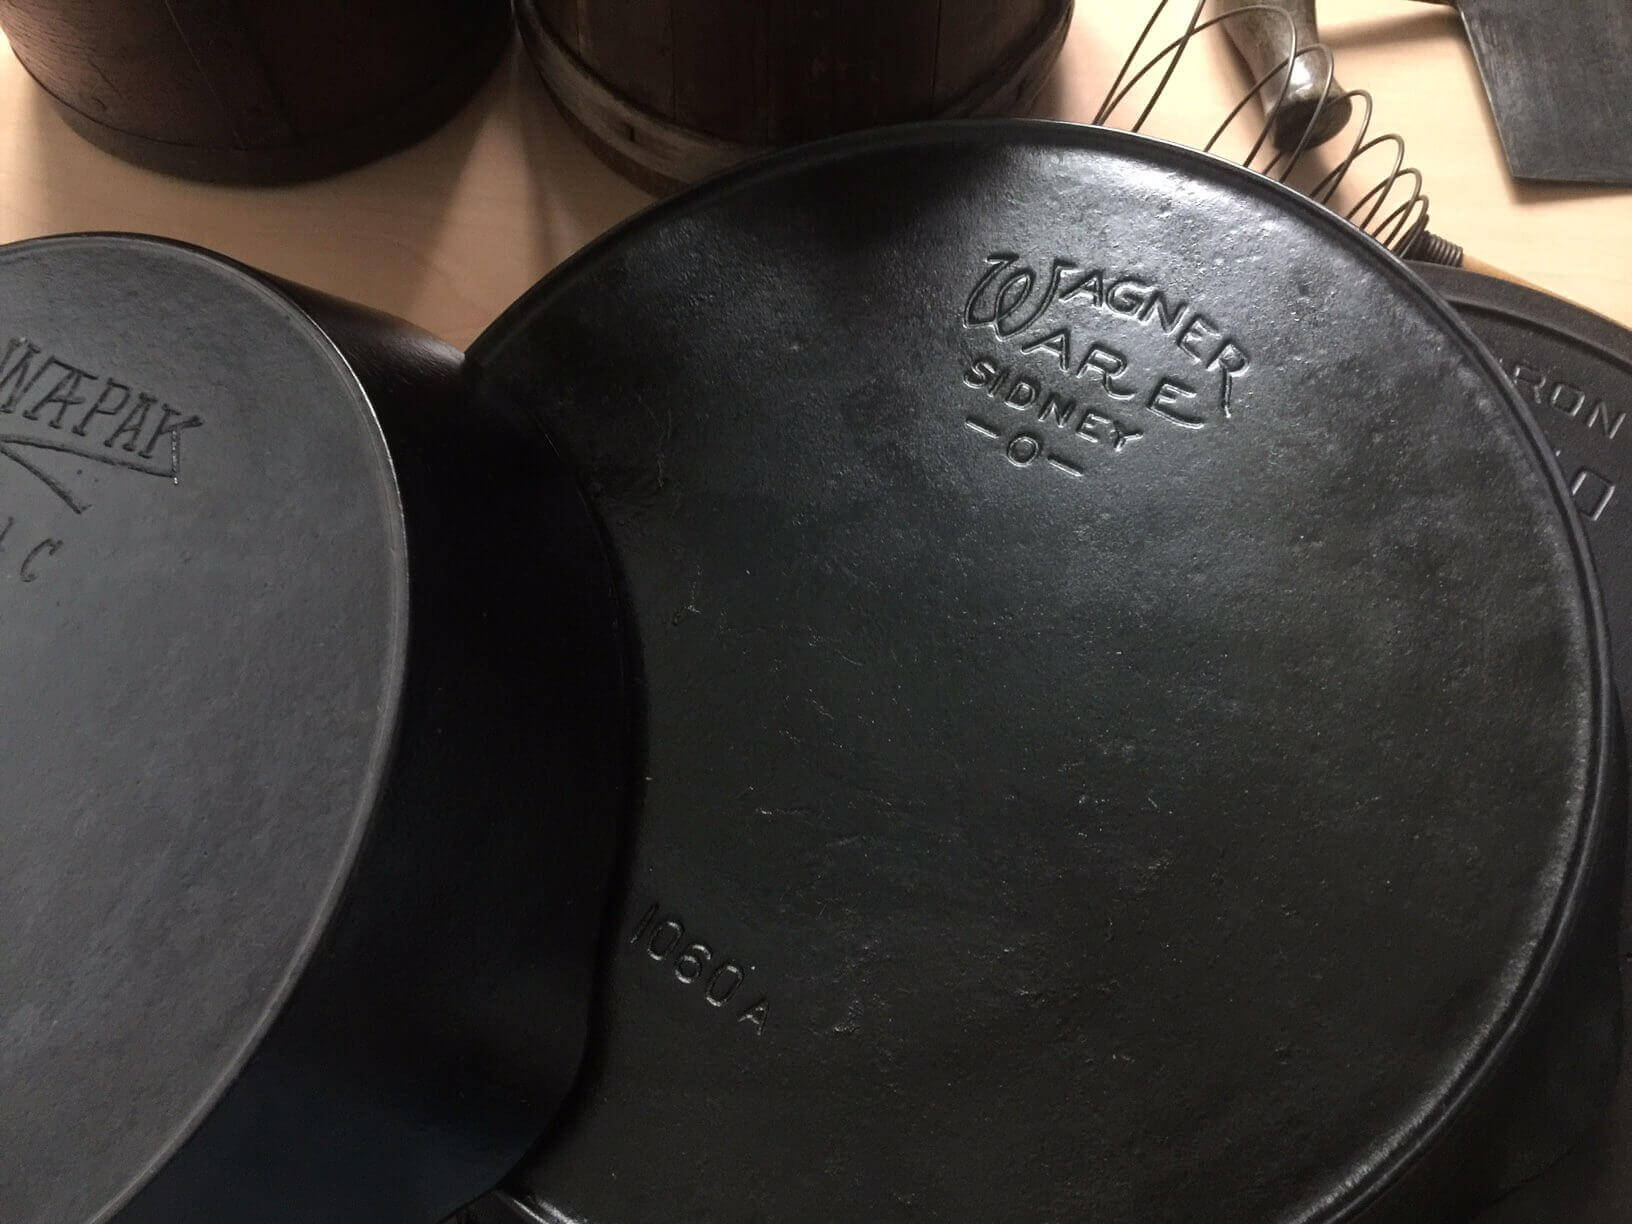 https://www.booniehicks.com/wp-content/uploads/2018/09/Three-vintage-cast-iron-pans.jpg